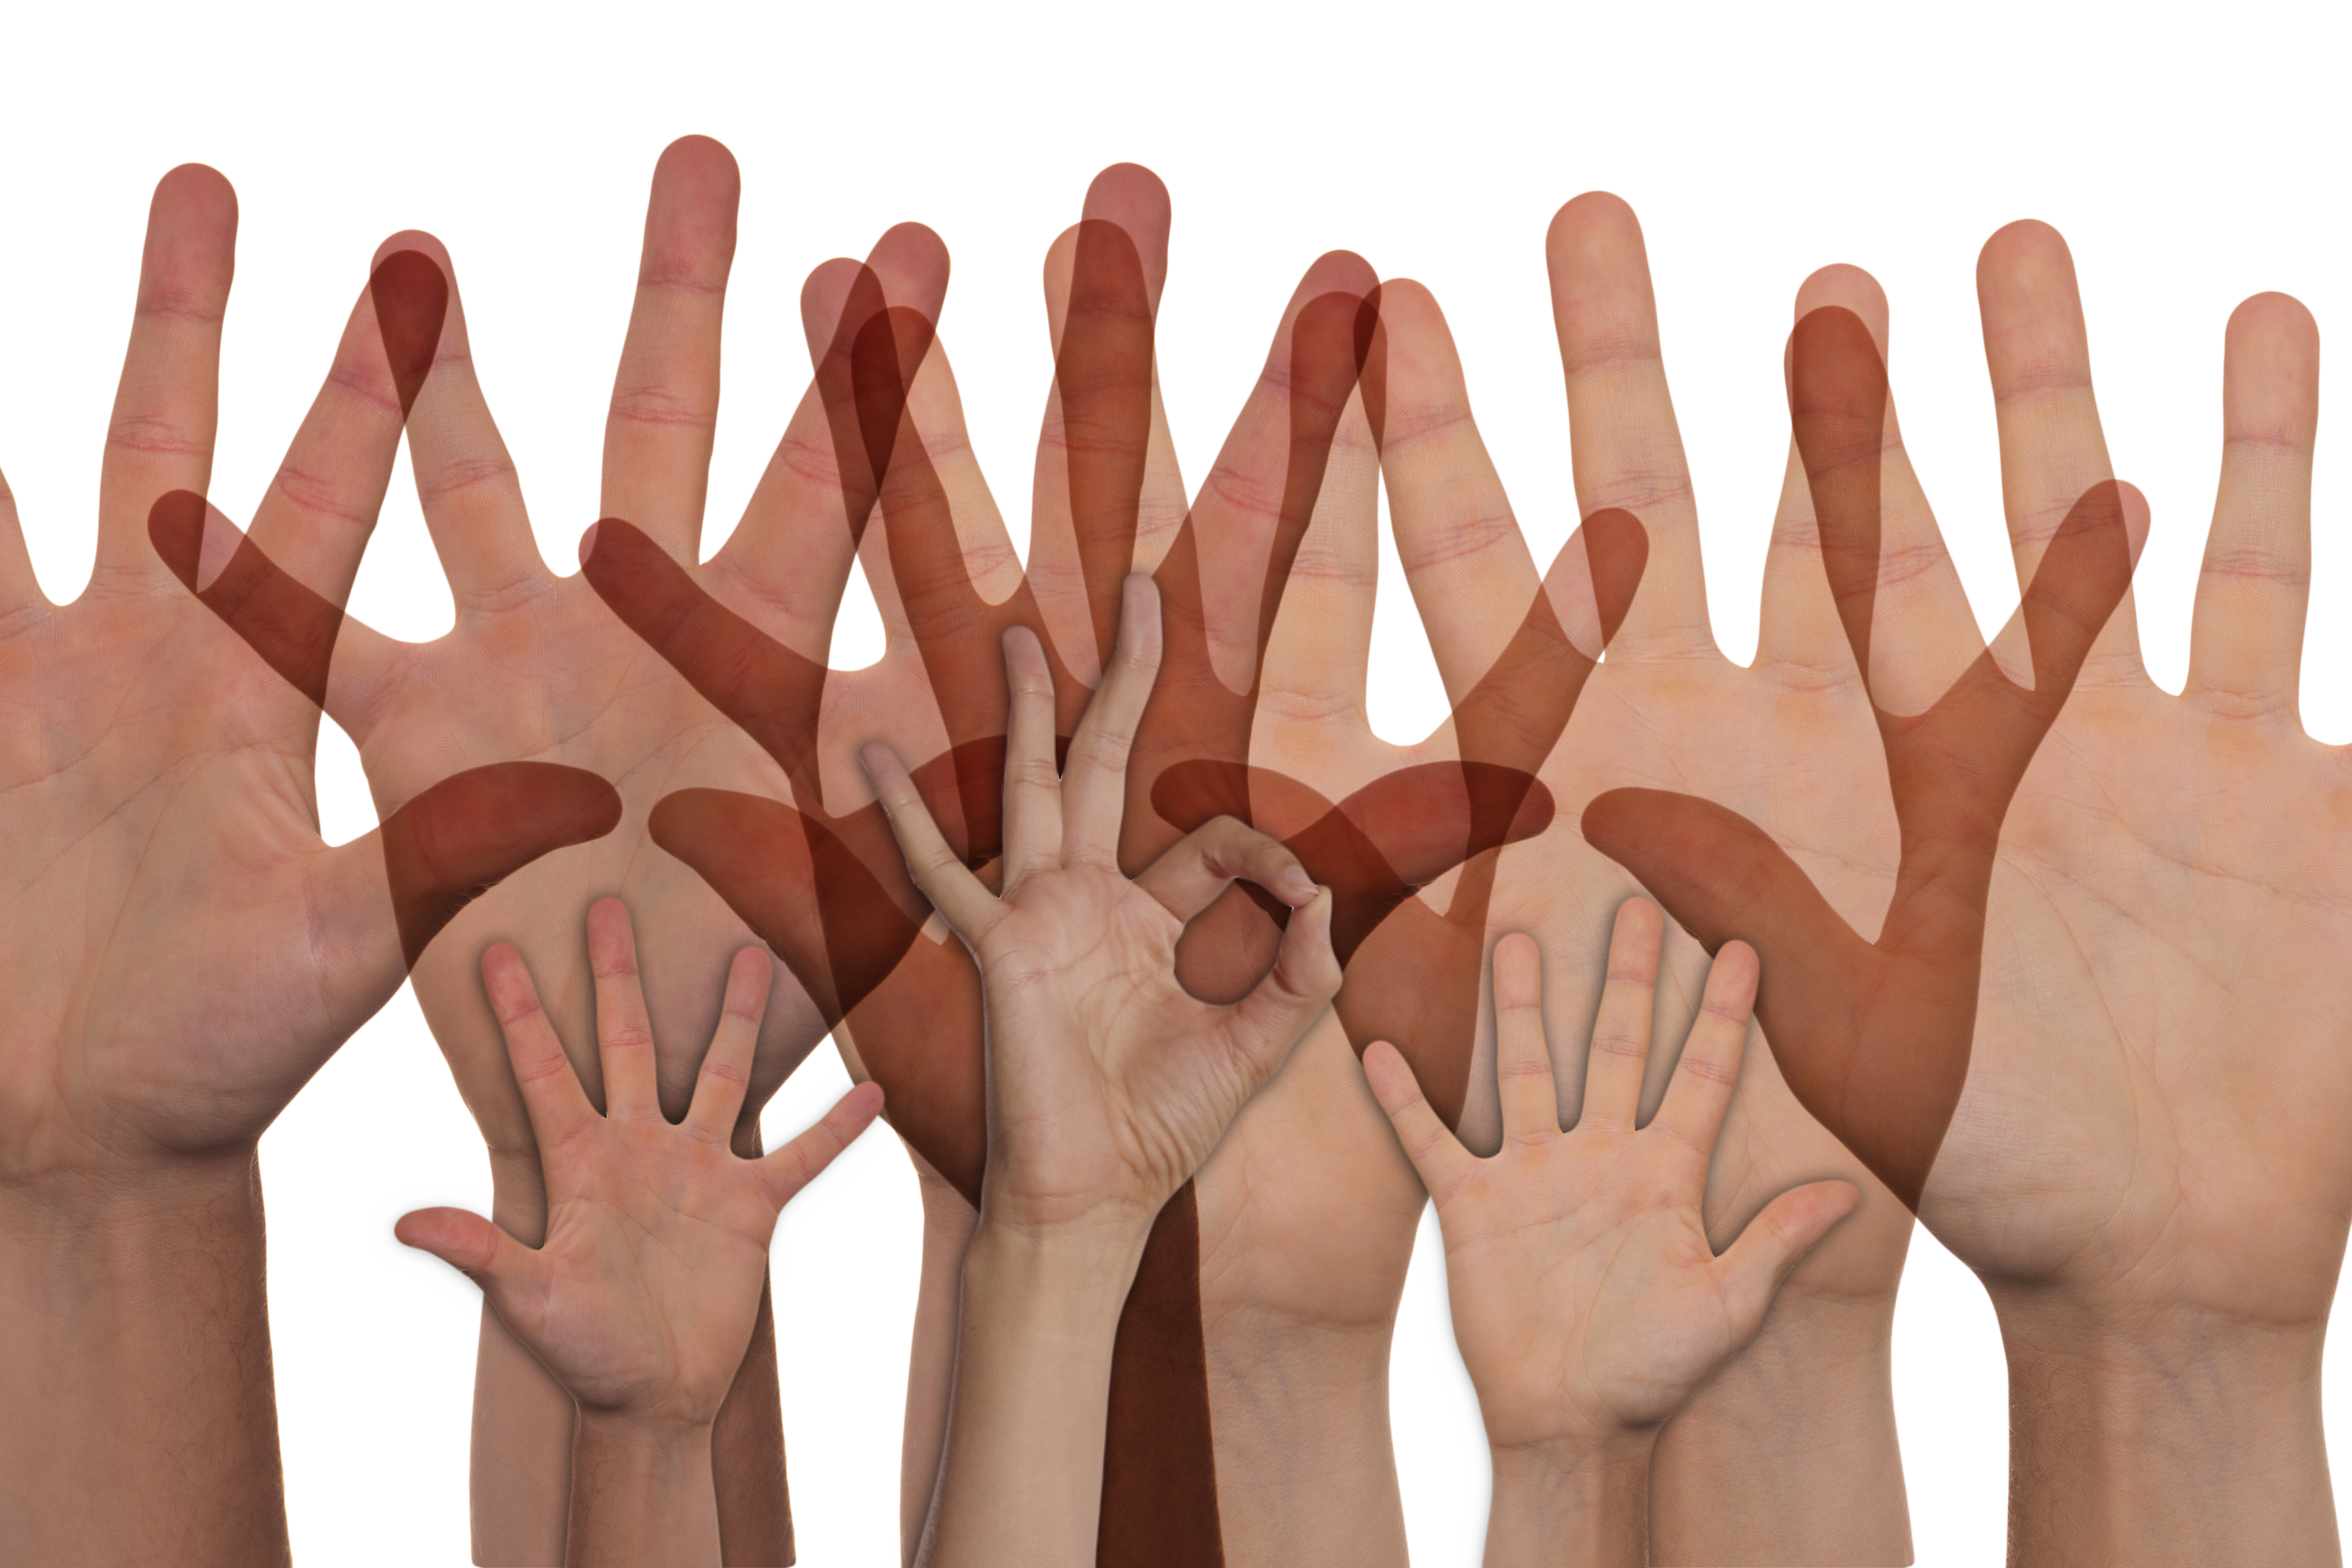 Volunteers - Hands Up